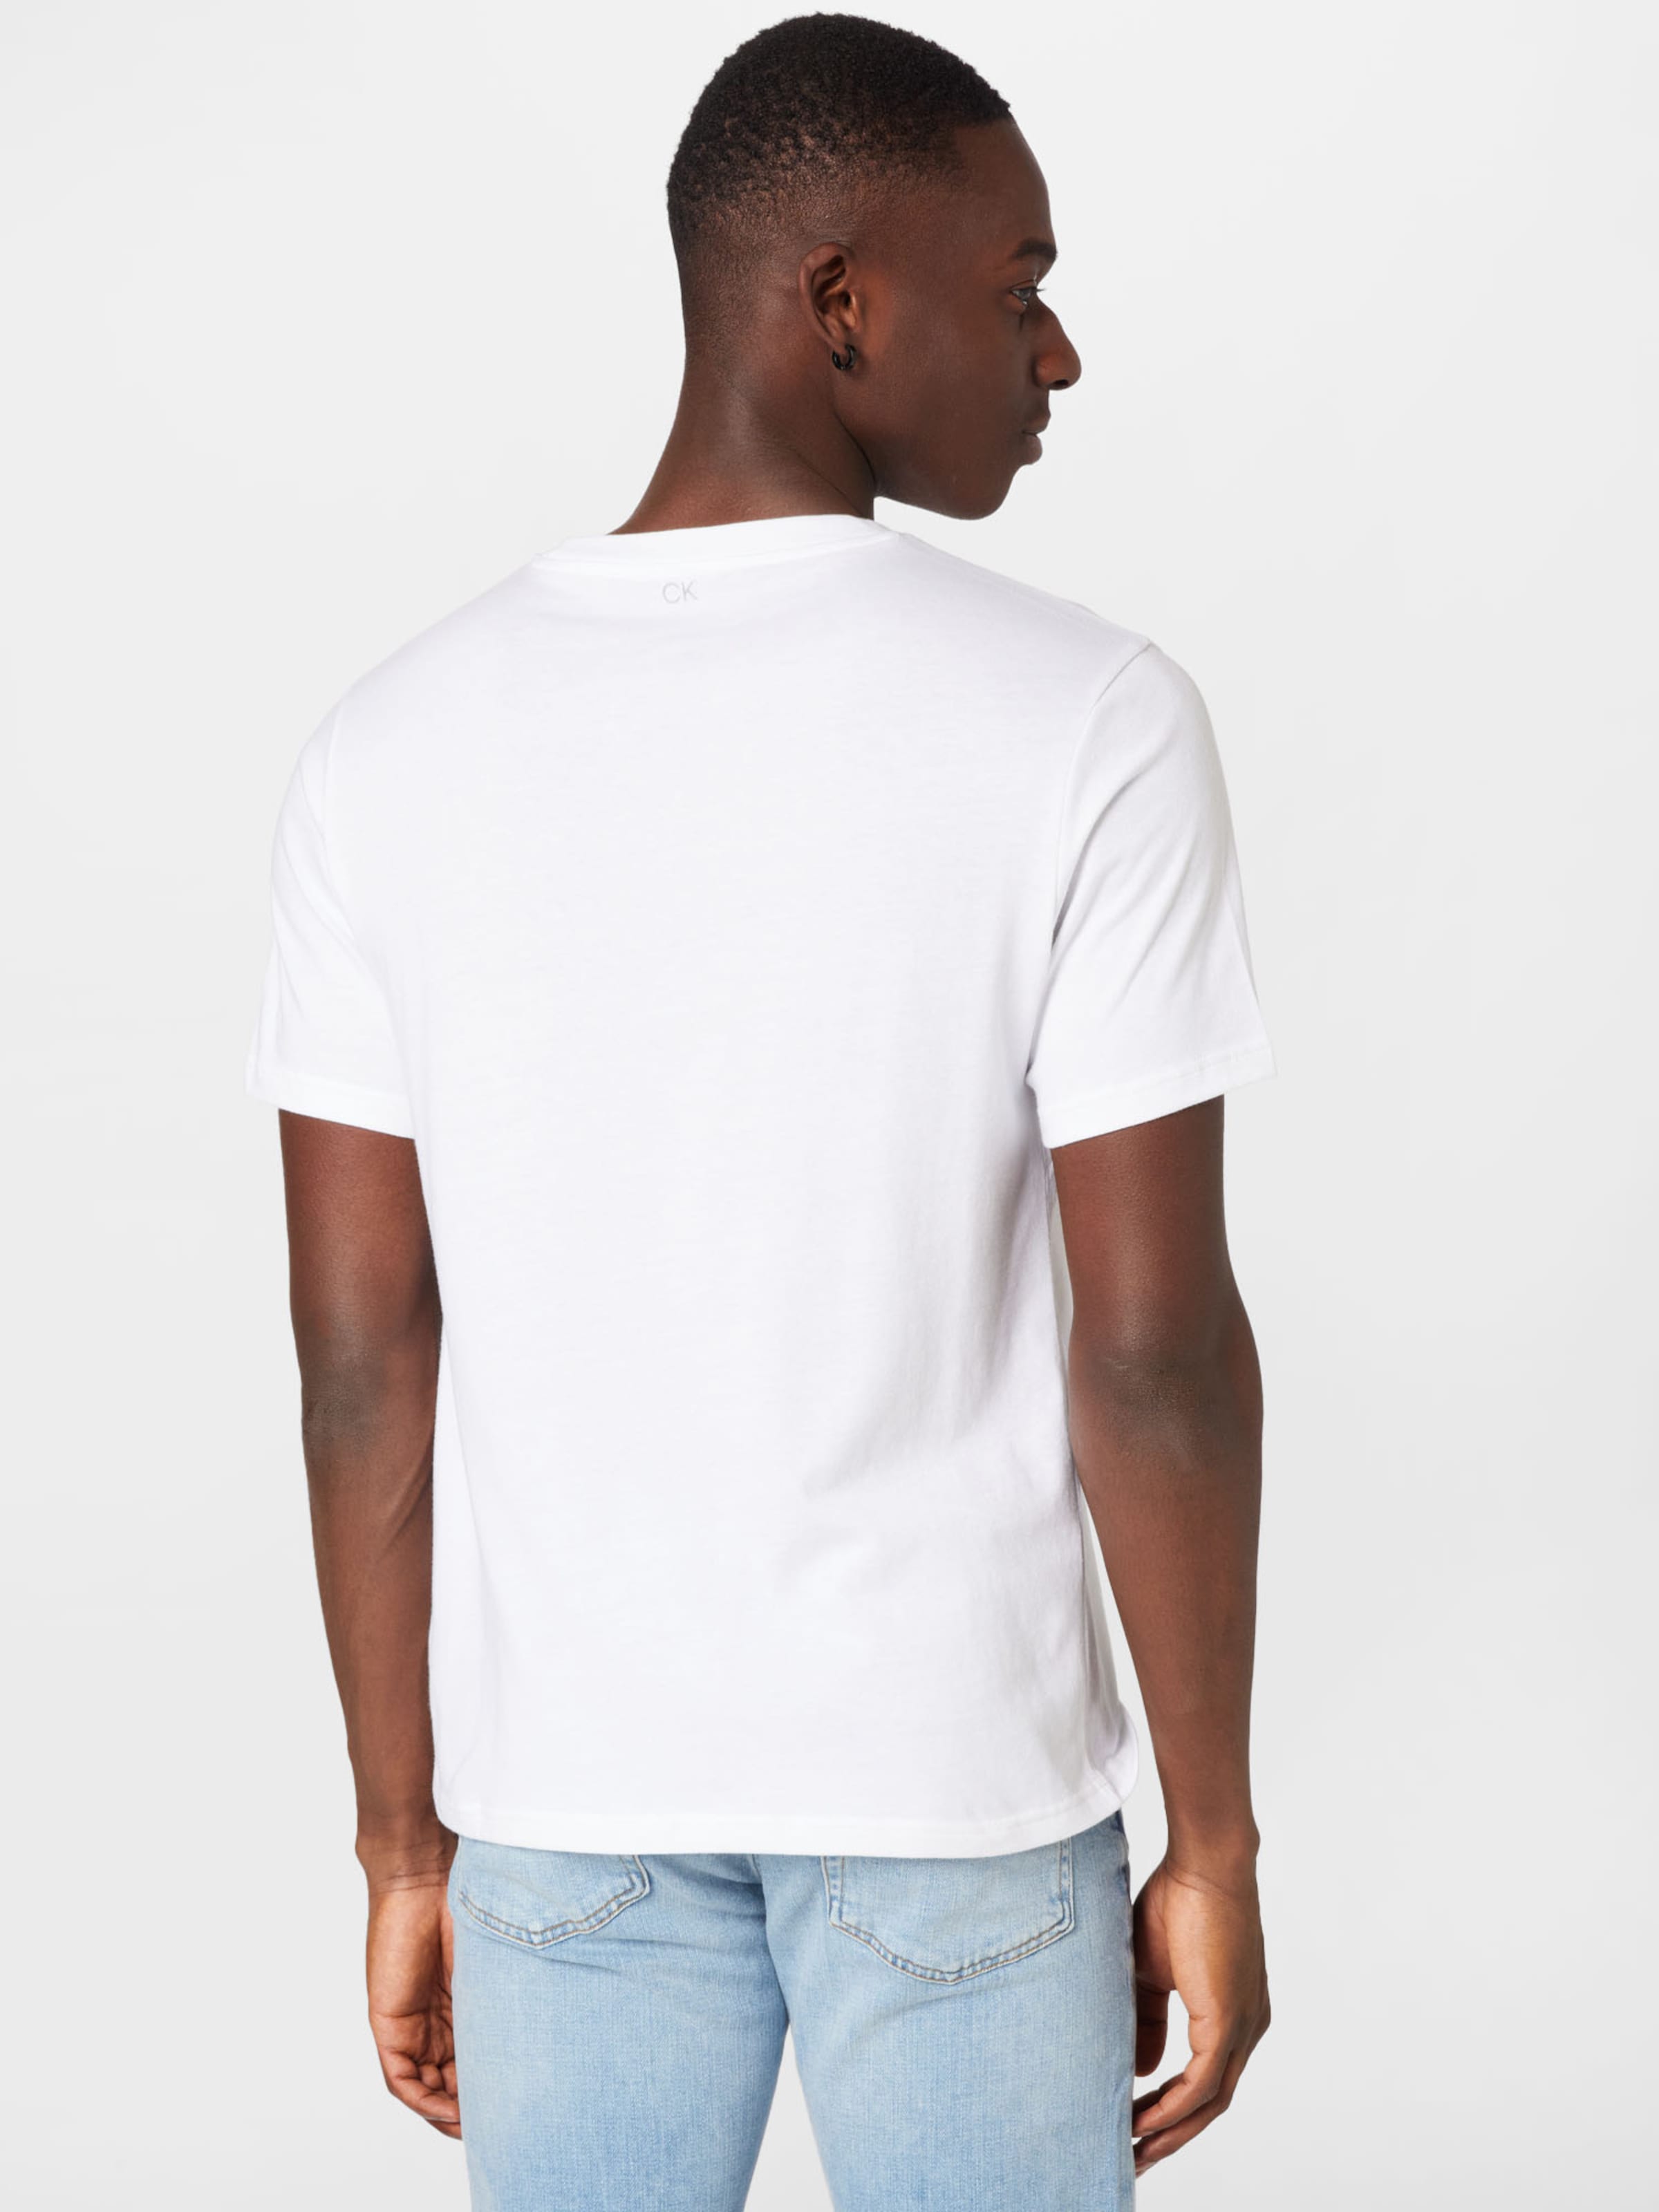 Calvin Klein Sport Shirt in Weiß | ABOUT YOU